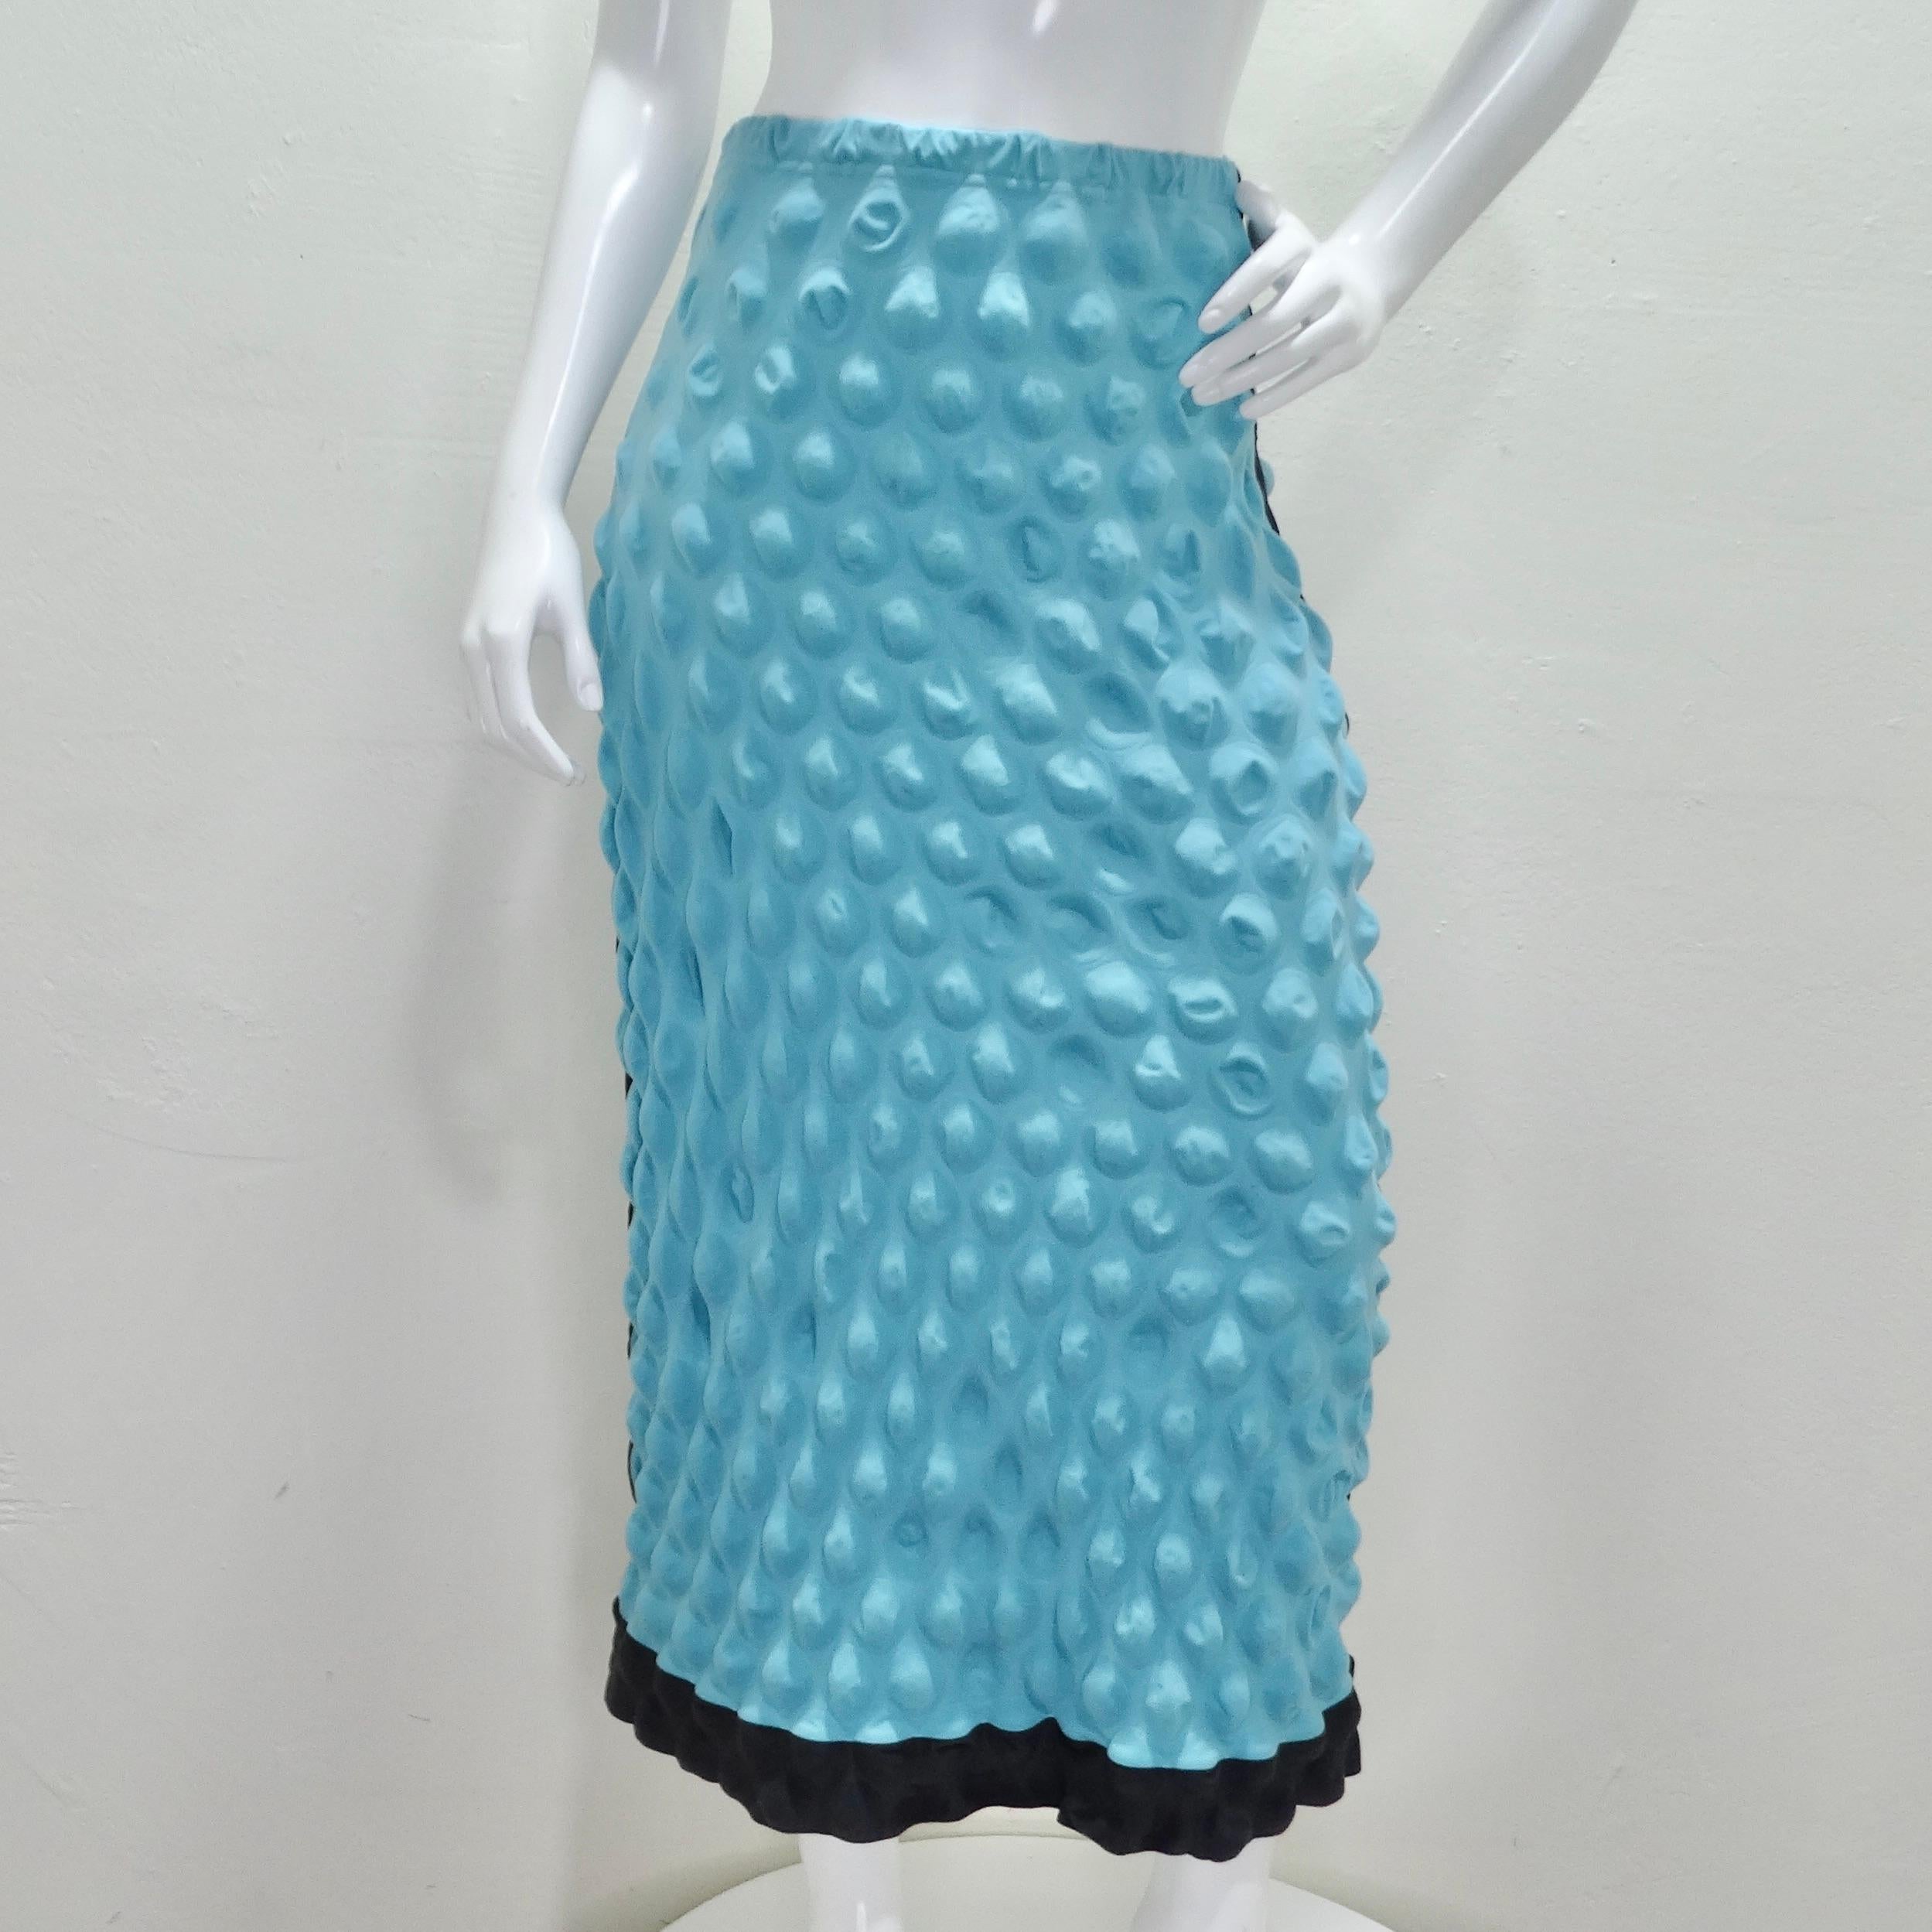 La jupe bulle bleue Issey Miyake des années 1990 est une pièce vintage qui met en valeur l'approche innovante de la marque en matière de textiles et de design. Cette jupe crayon mi-longue présente un motif enveloppé de bulles distinctif, créant une